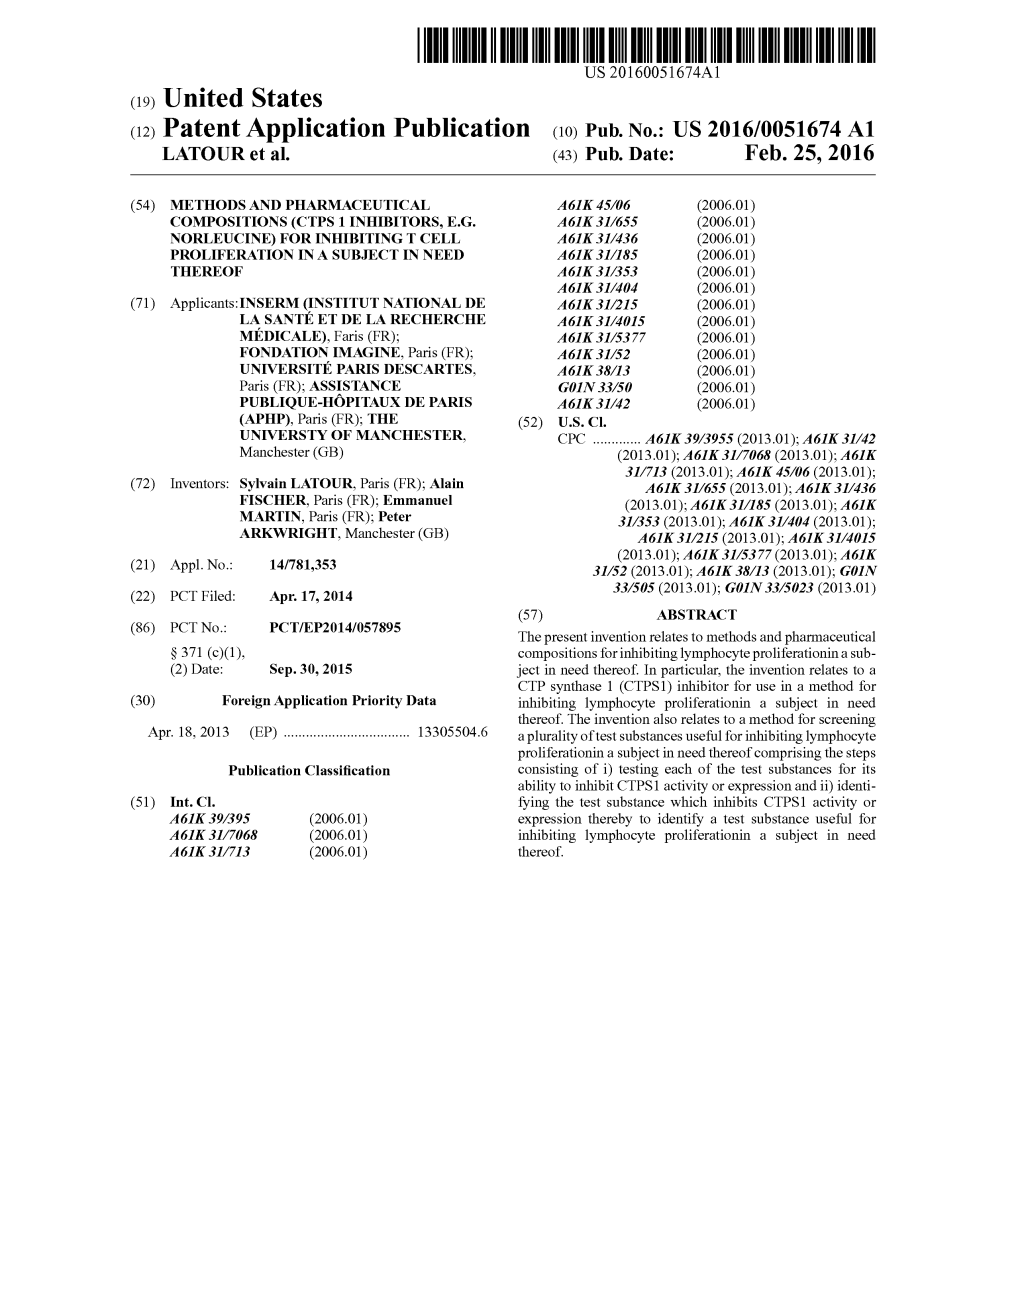 (12) Patent Application Publication (10) Pub. No.: US 2016/0051674 A1 LATOUR Et Al